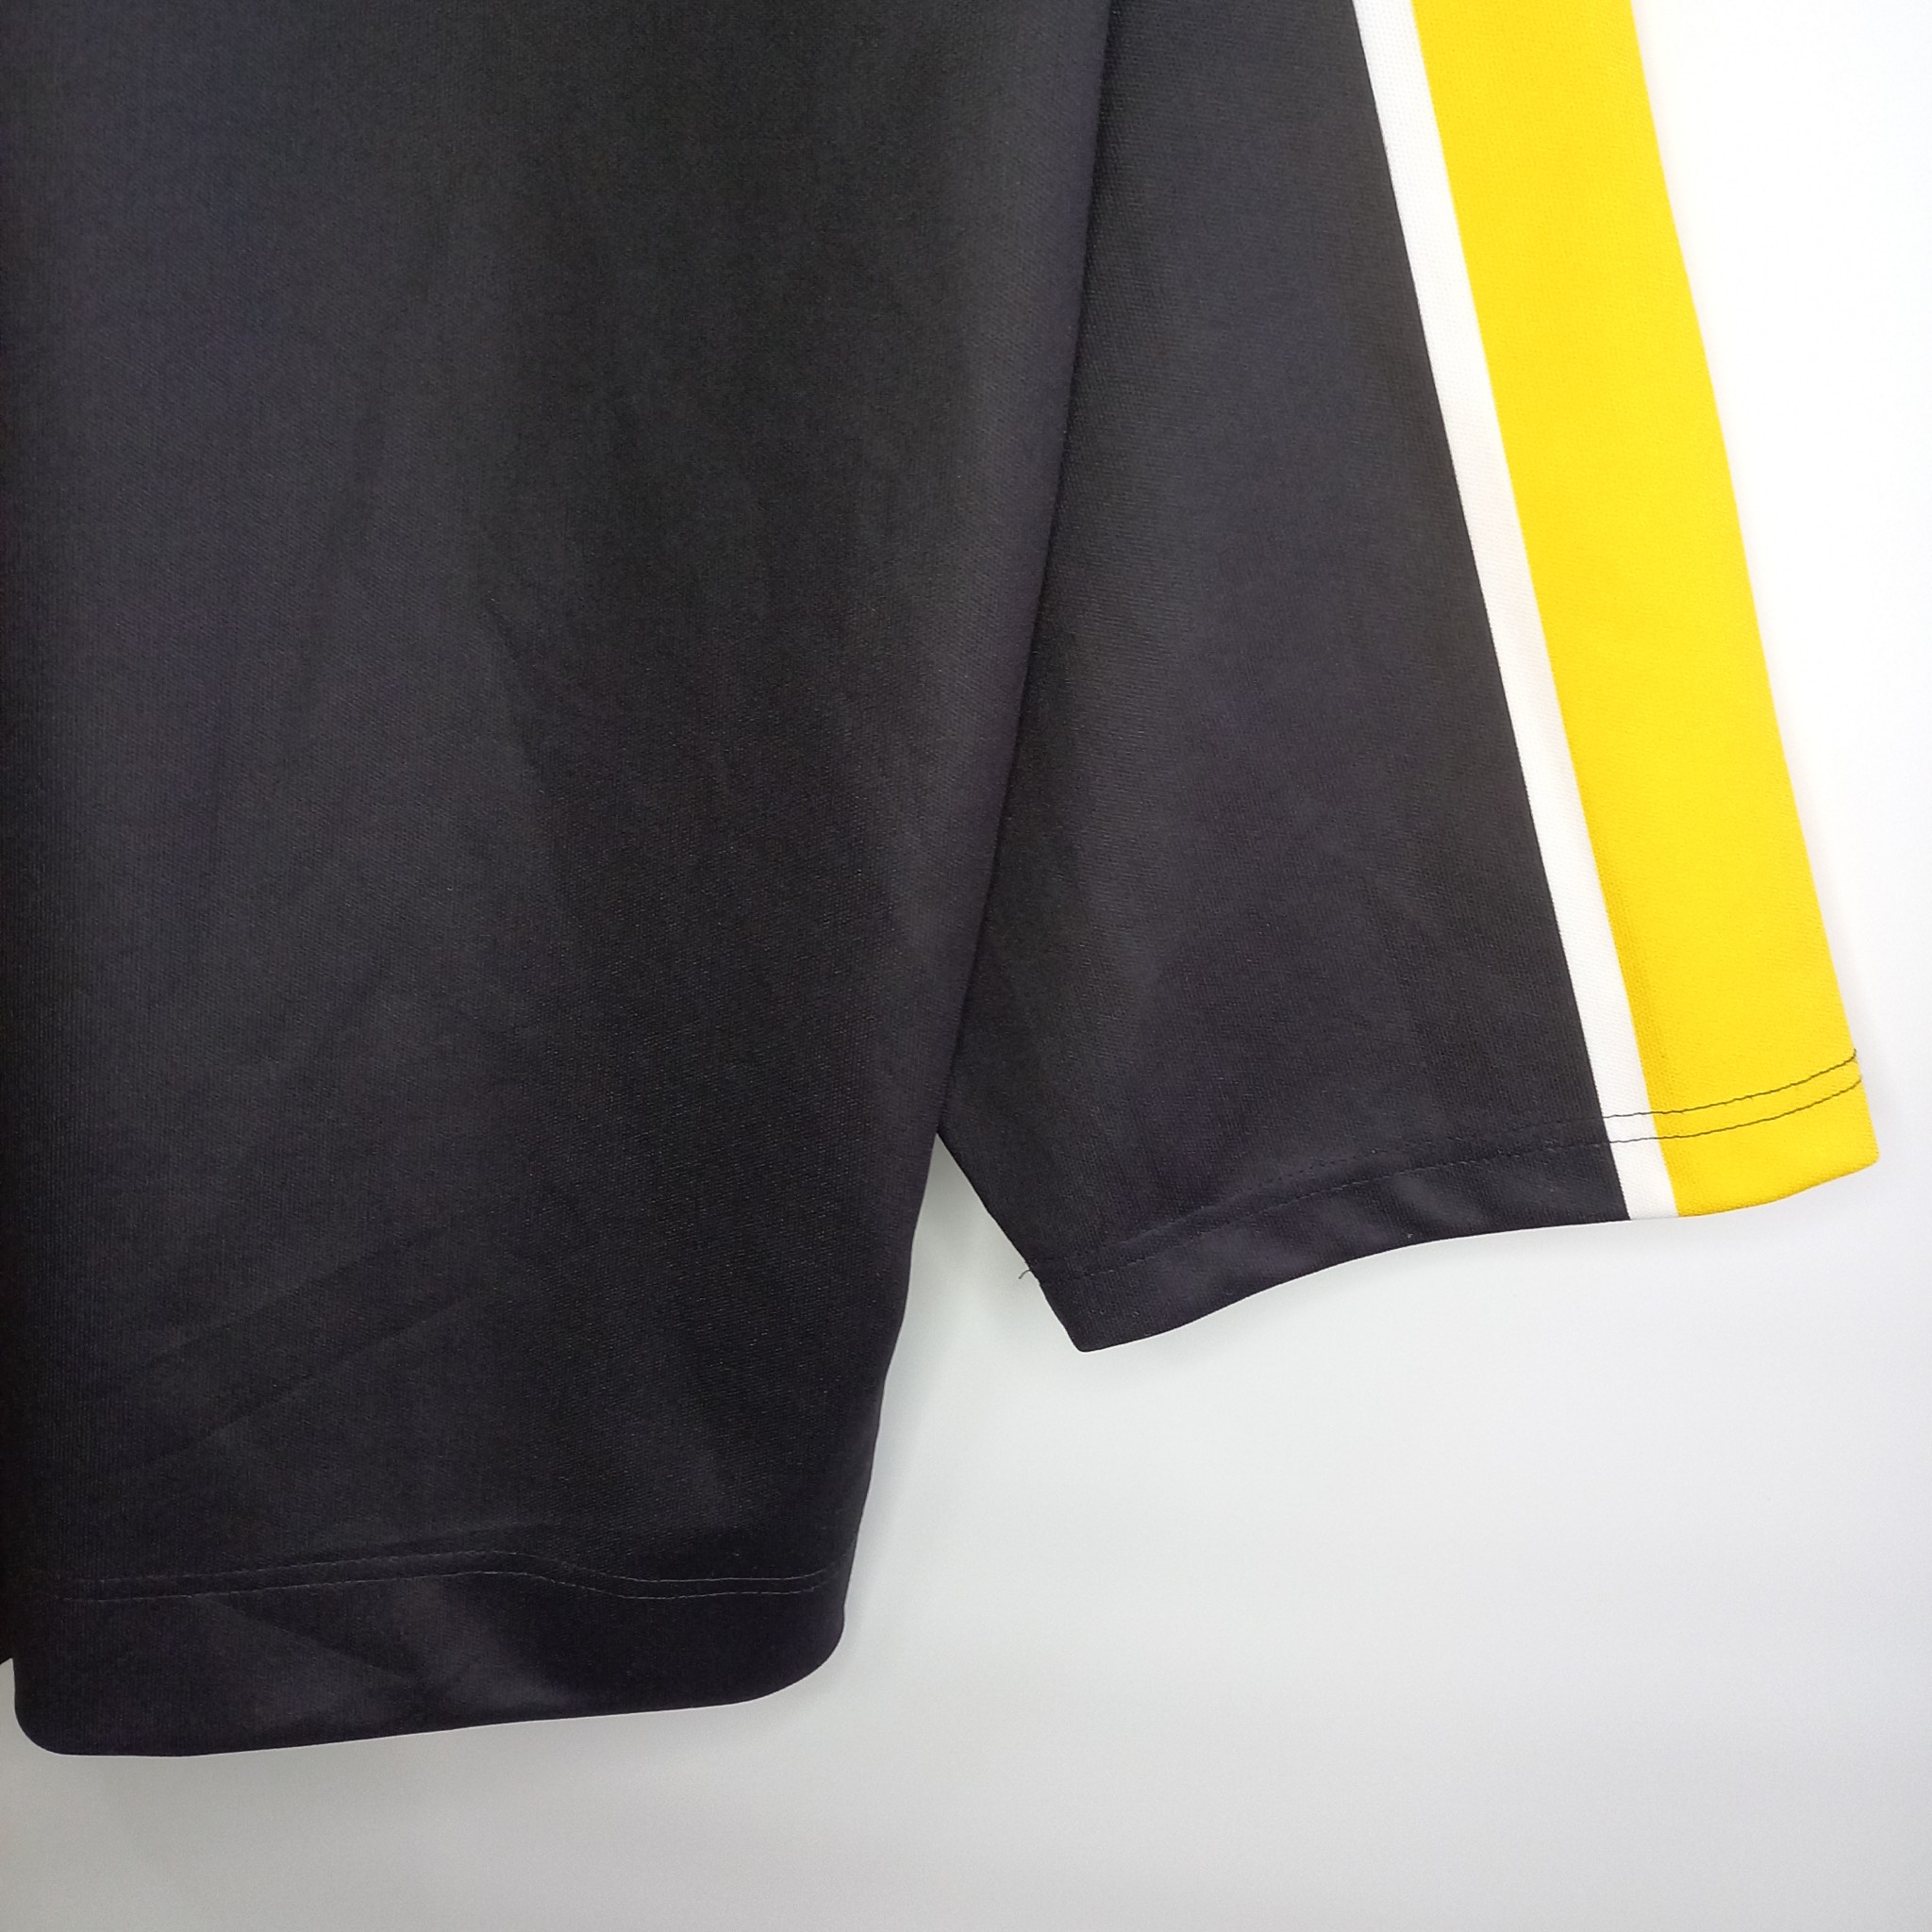 クロアチア製 CHIP SPORT ホッケーシャツ ゲームシャツ NHL ロンT XL